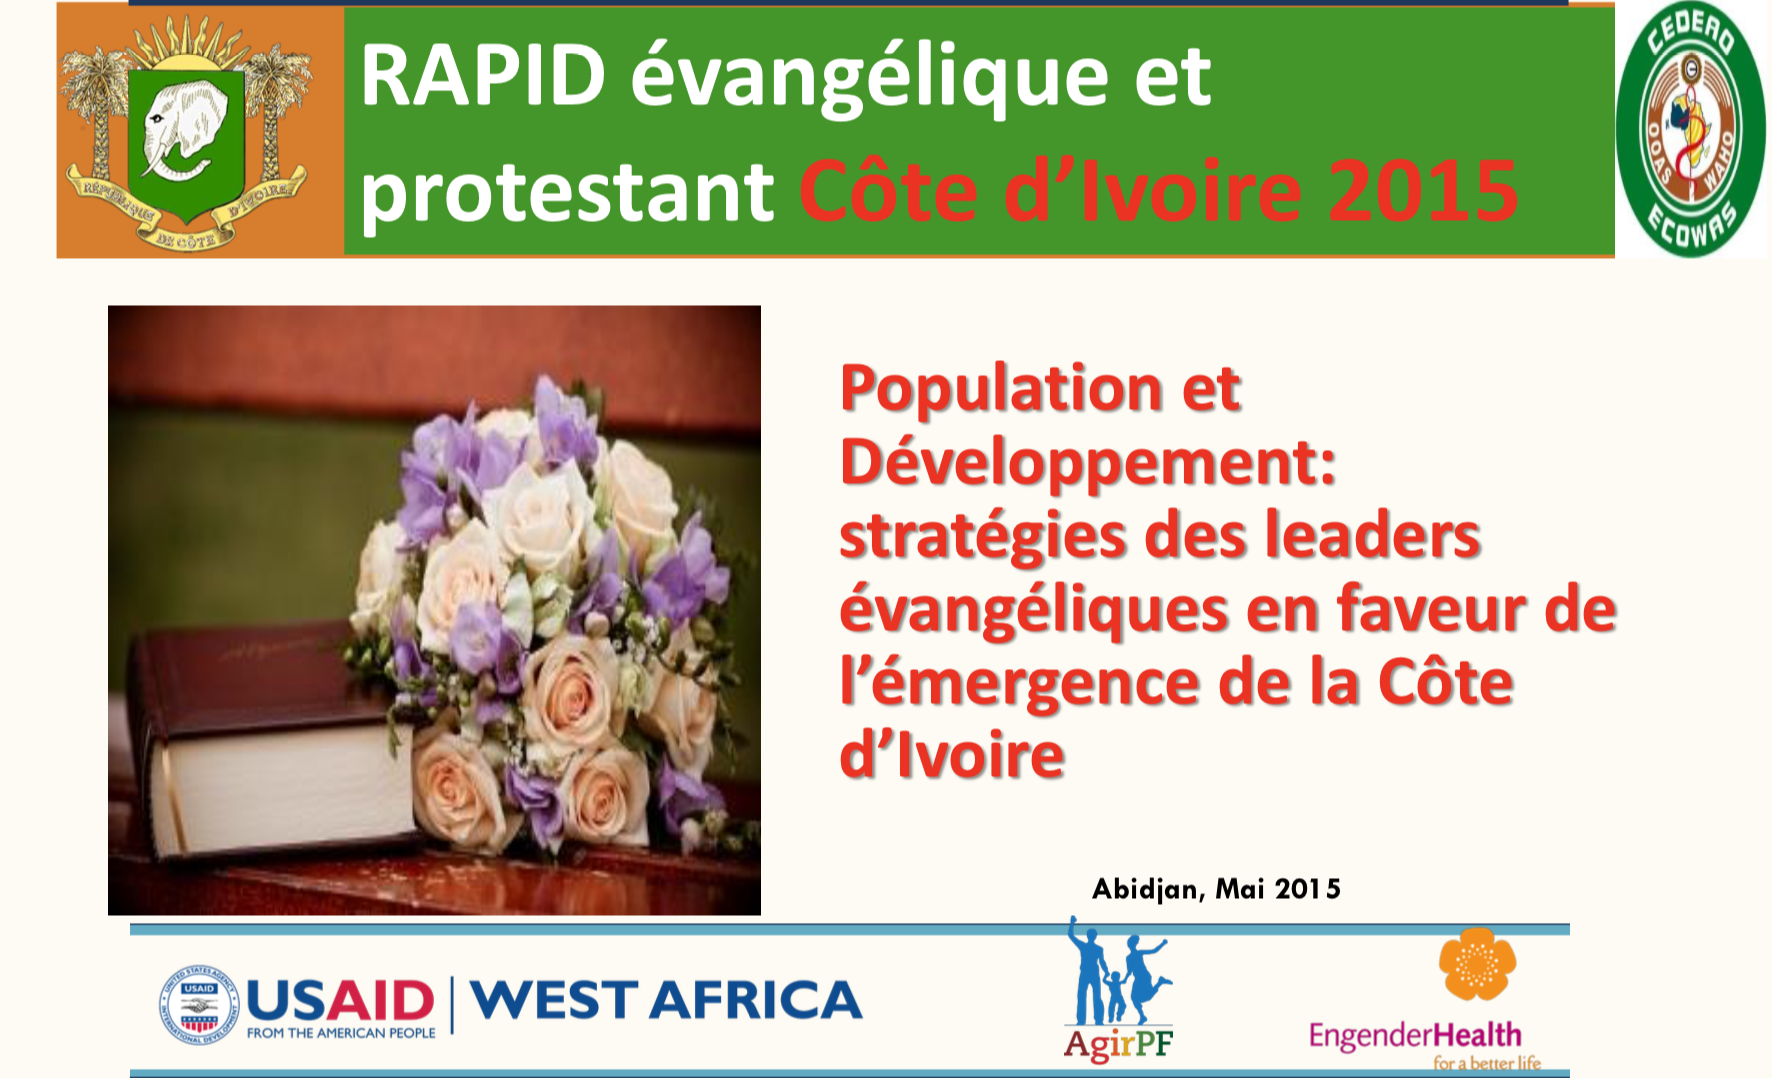 Stratégies des leaders évangéliques en faveur de l'émergence de la Côte d'Ivoire